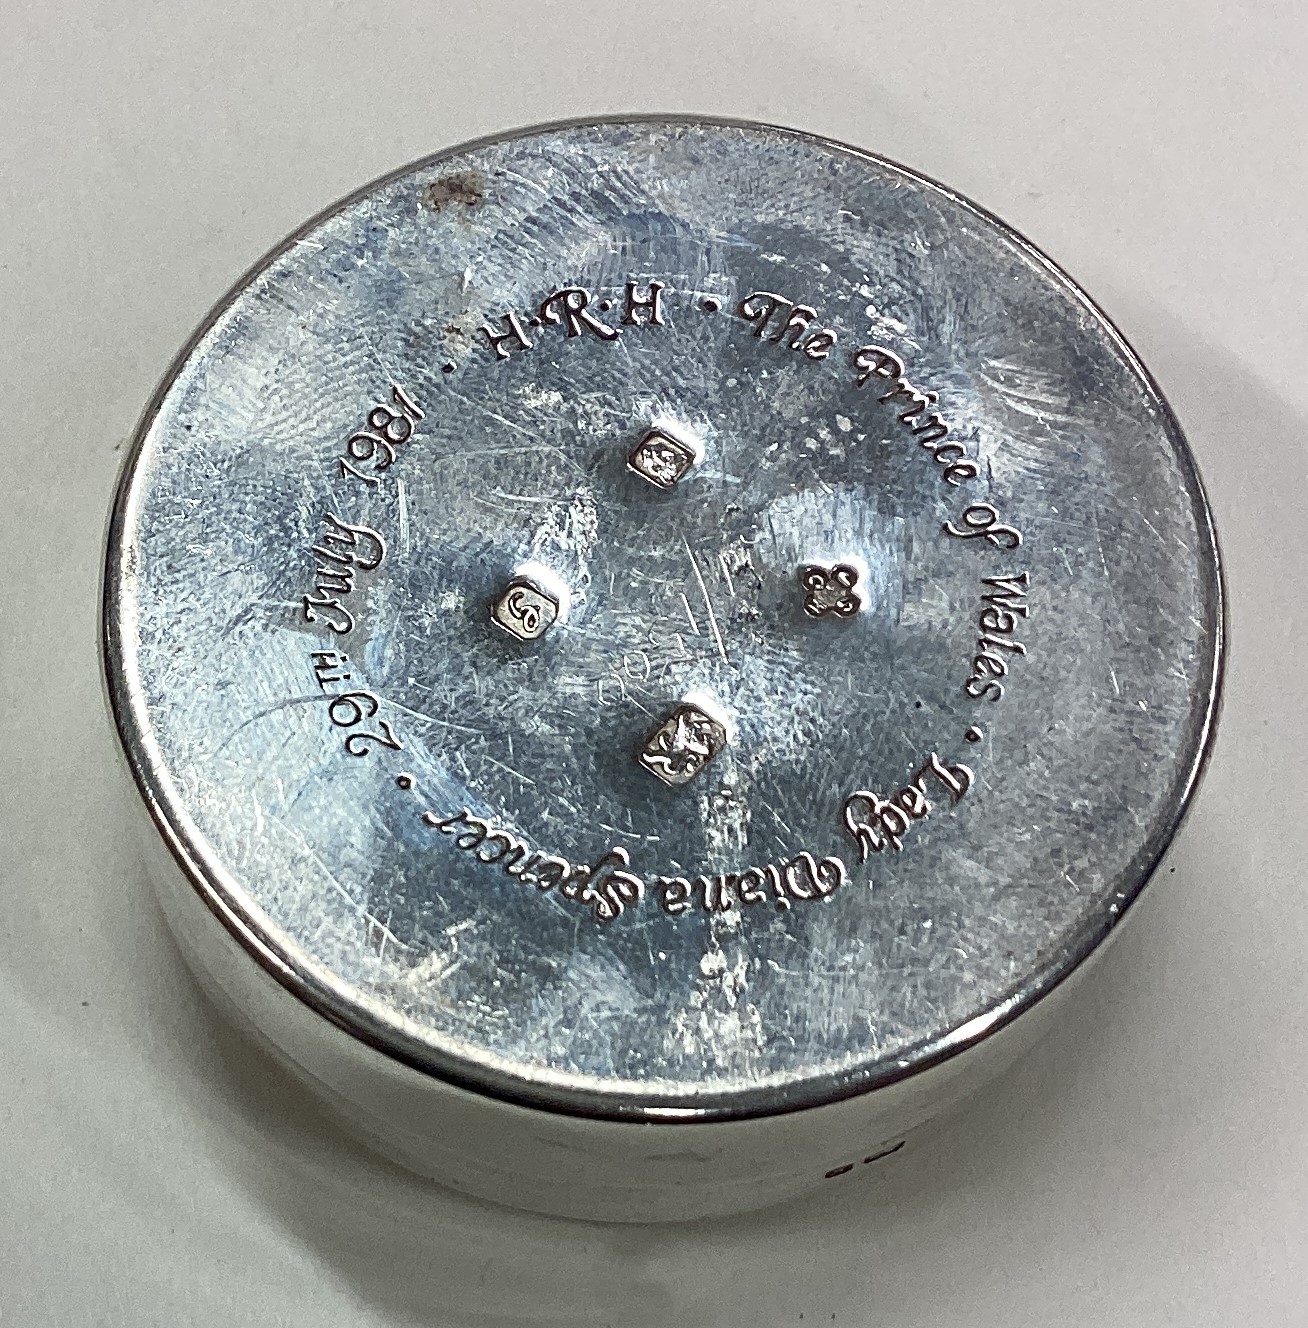 A commemorative silver snuff box. - Image 2 of 2